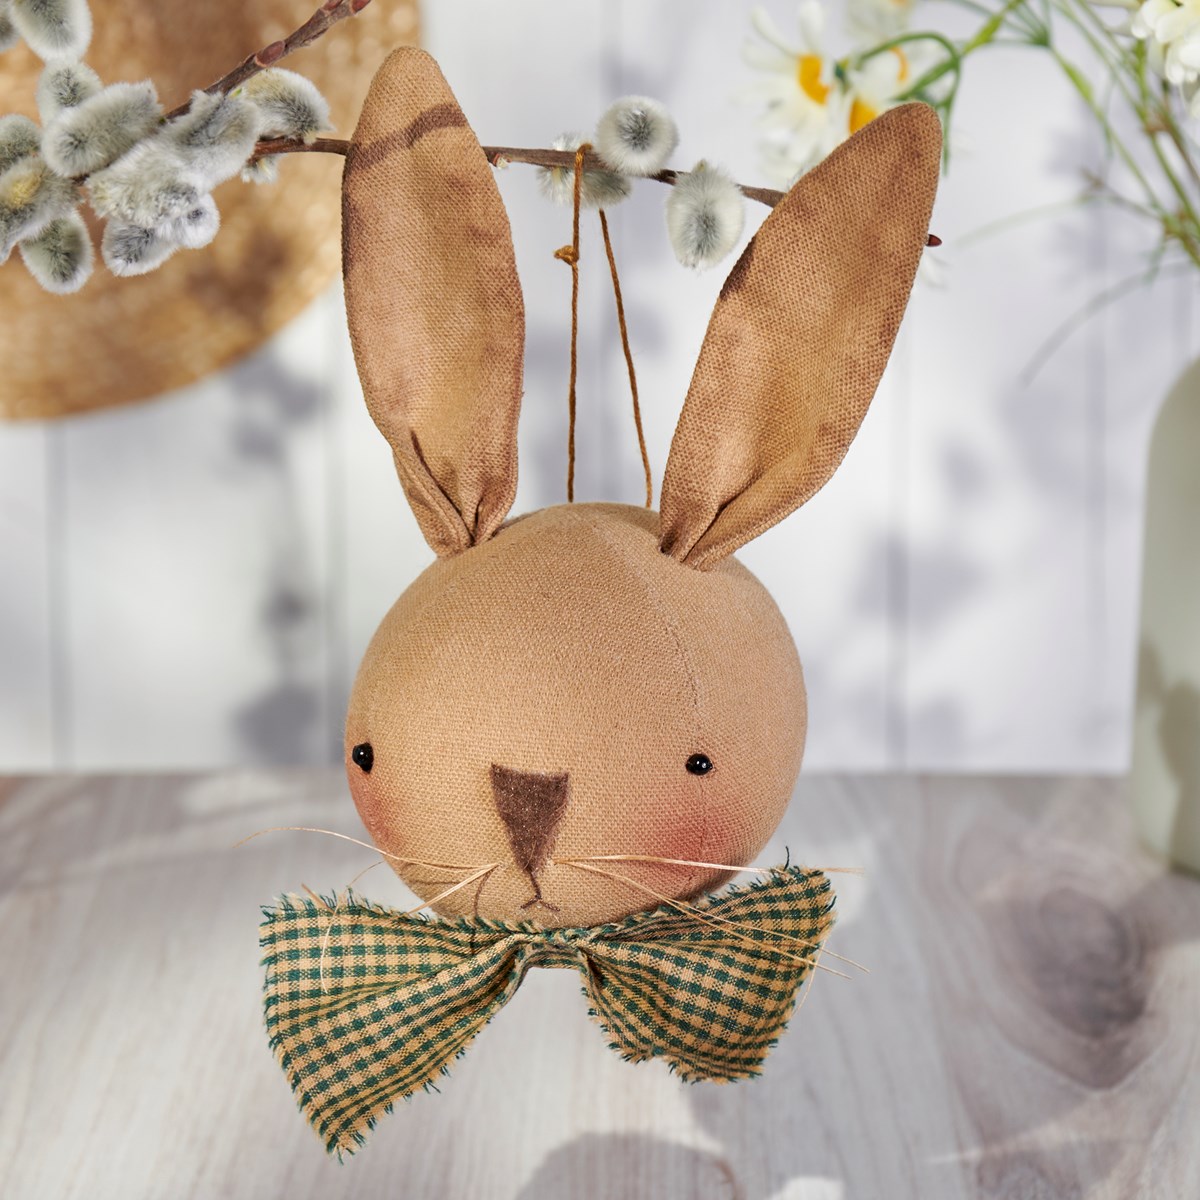 Bow Tie Bunny Ornament - Cotton, Wire, Plastic, String